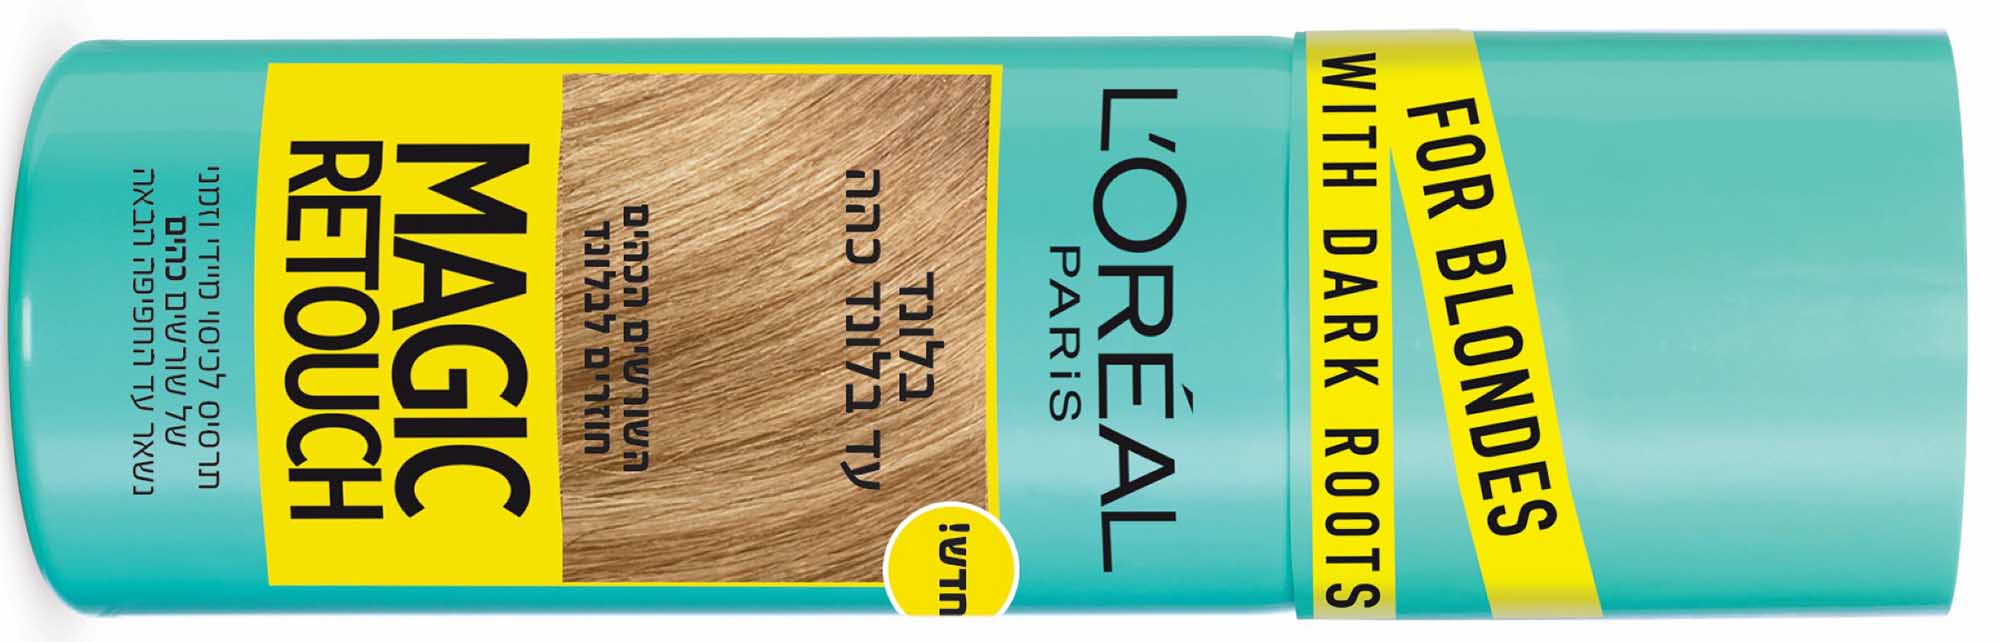 מגיק ריטאץ לצבועות שיער בלונדיני לוריאל פריז מחיר השקה ינואר 2020 29.90שח במקום 49.90שח צילום יחצ חול (1)7